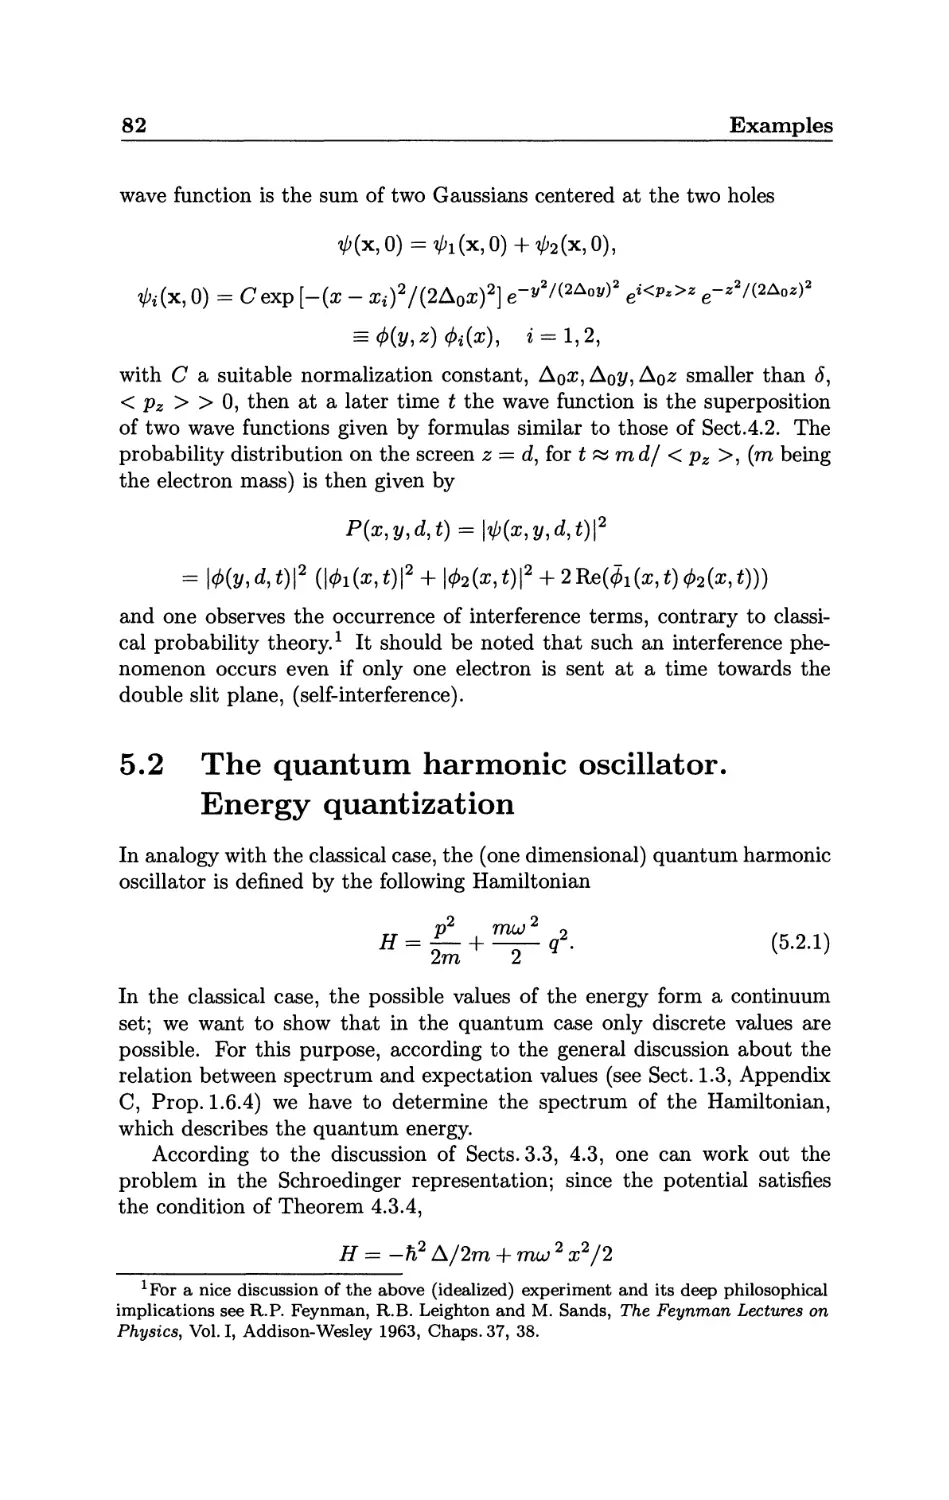 5.2 The quantum harmonic oscillator. Energy quantization